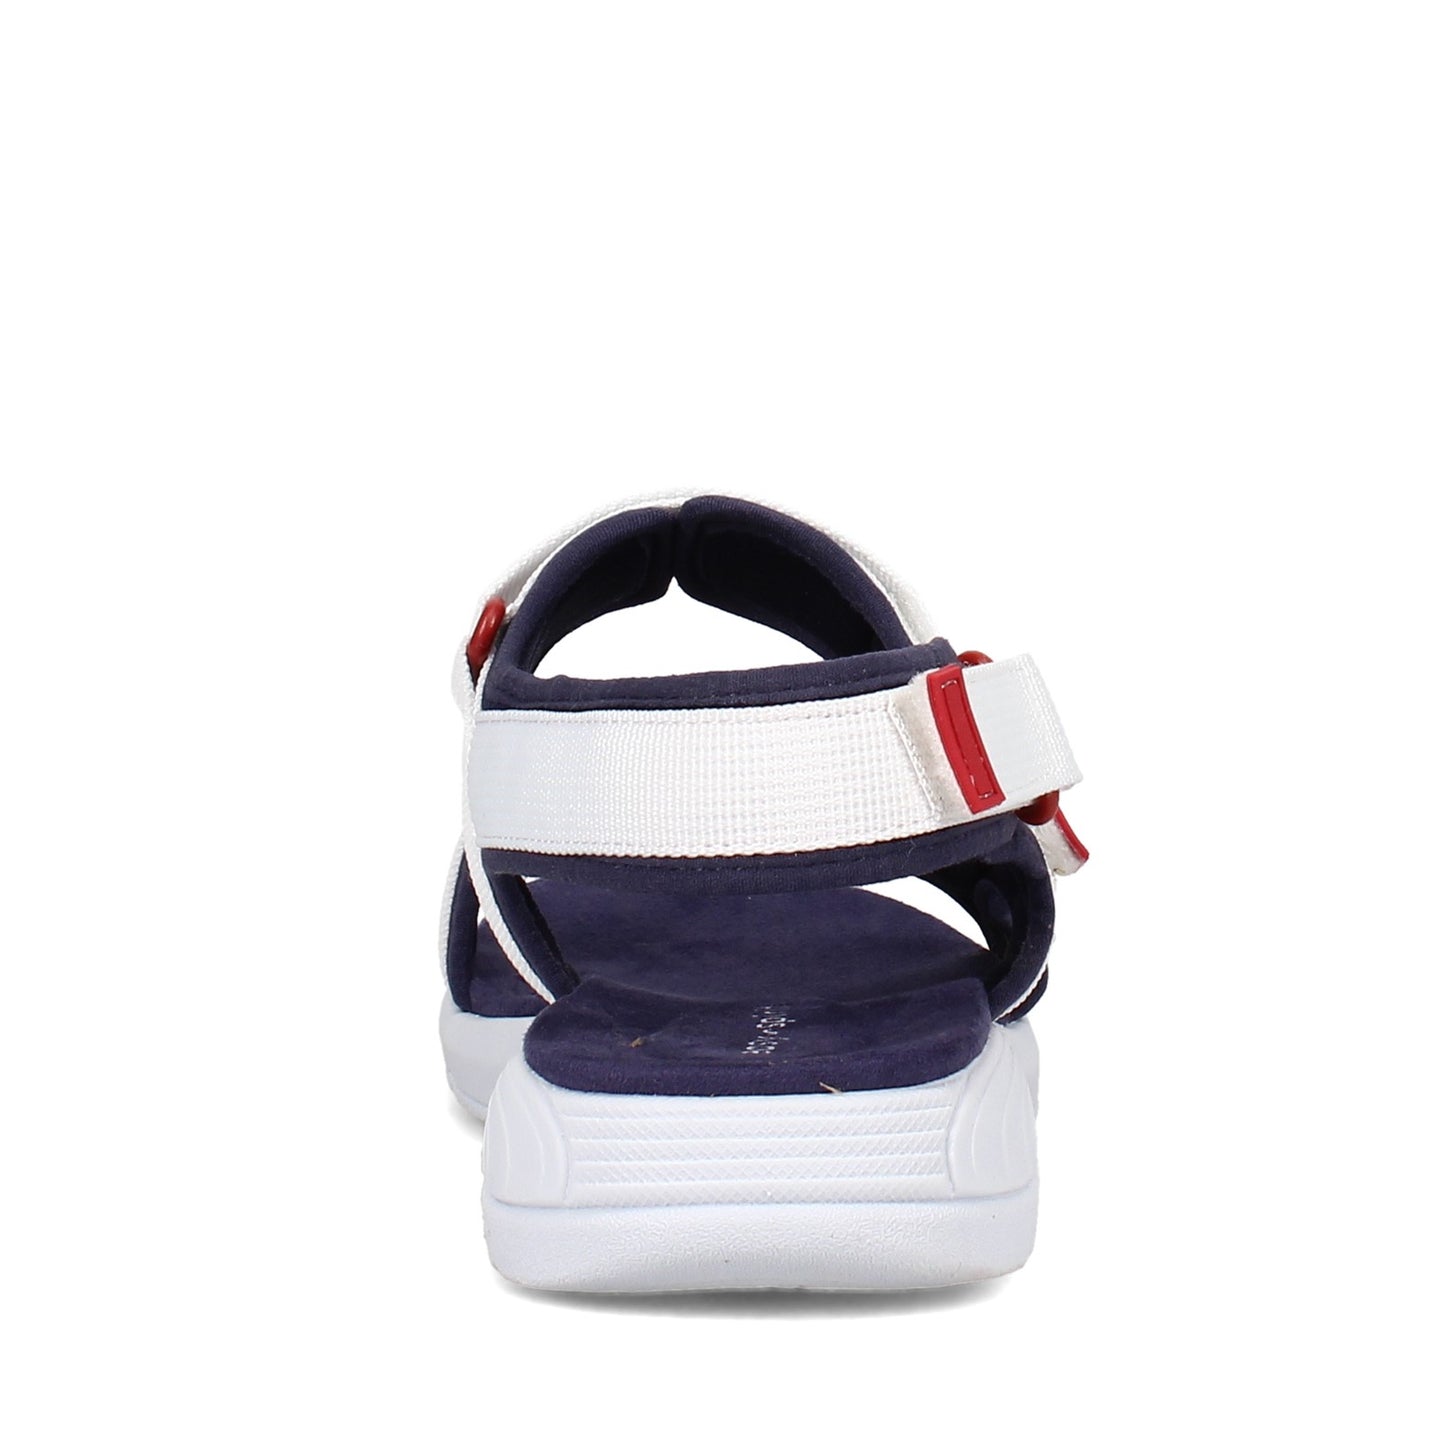 Peltz Shoes  Women's Easy Spirit Tabata Sandal RED WHITE BLUE TABATA2-DBL01